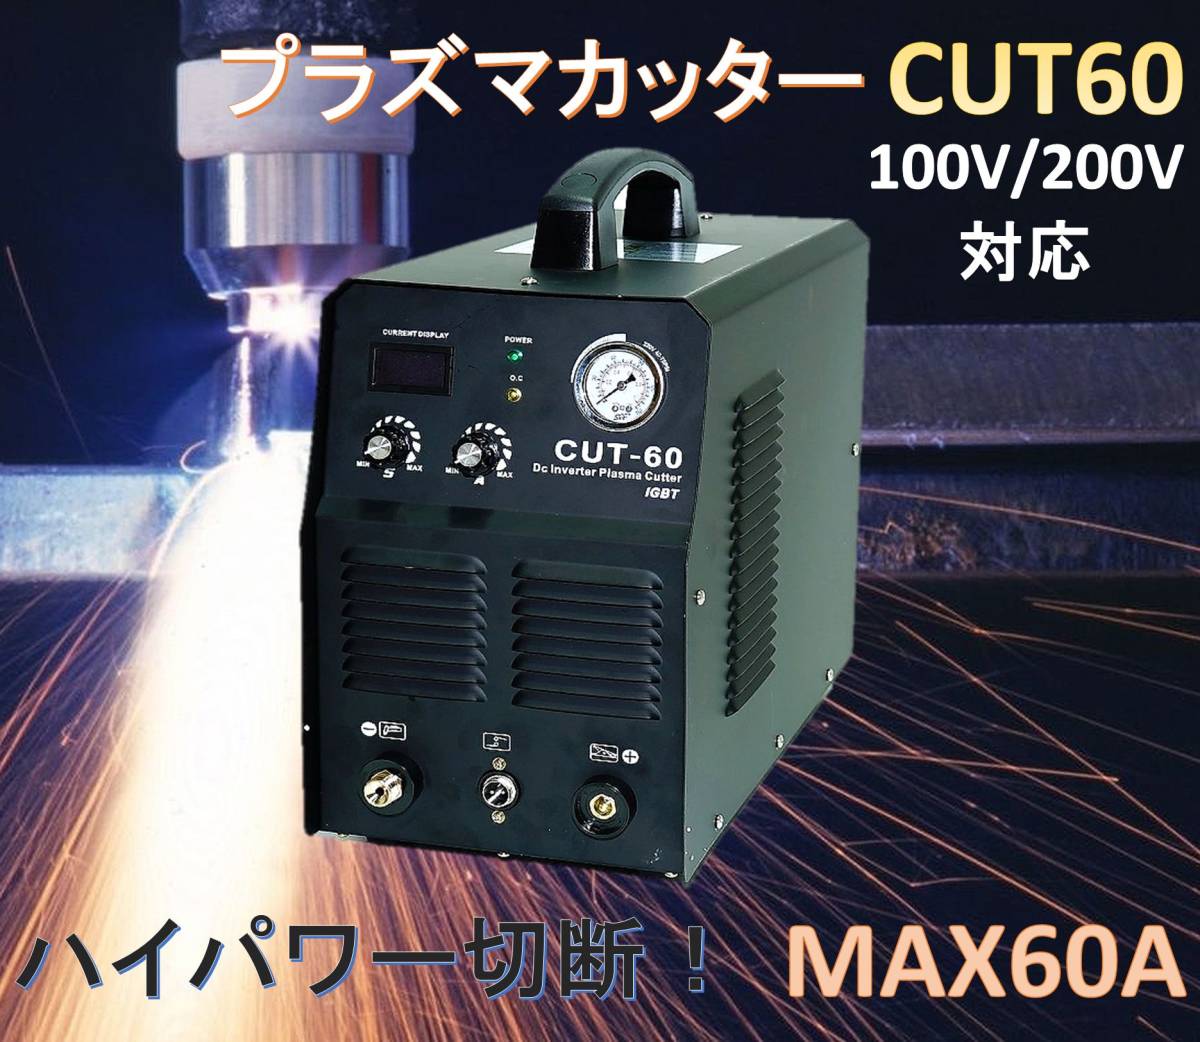 直流DC インバーター式 プラズマカッター CUT60！ハイパワー切断 AC100V/200V両方可！金属を楽にサクサク切断！ CUT-60